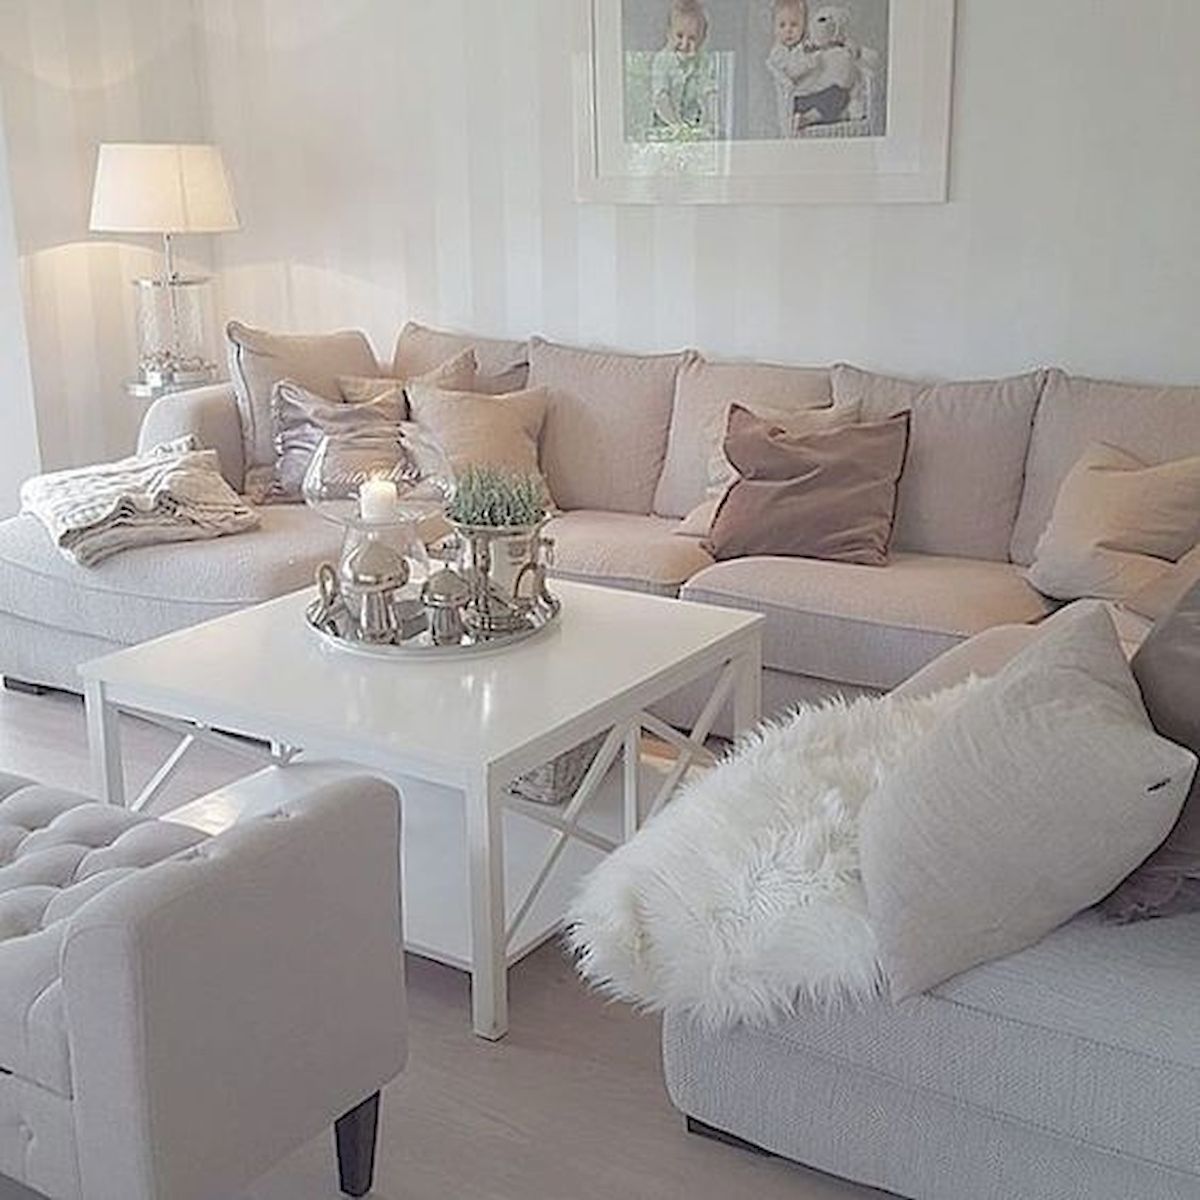 Minimalist Beauty: Simple and Elegant Living Room Design Ideas